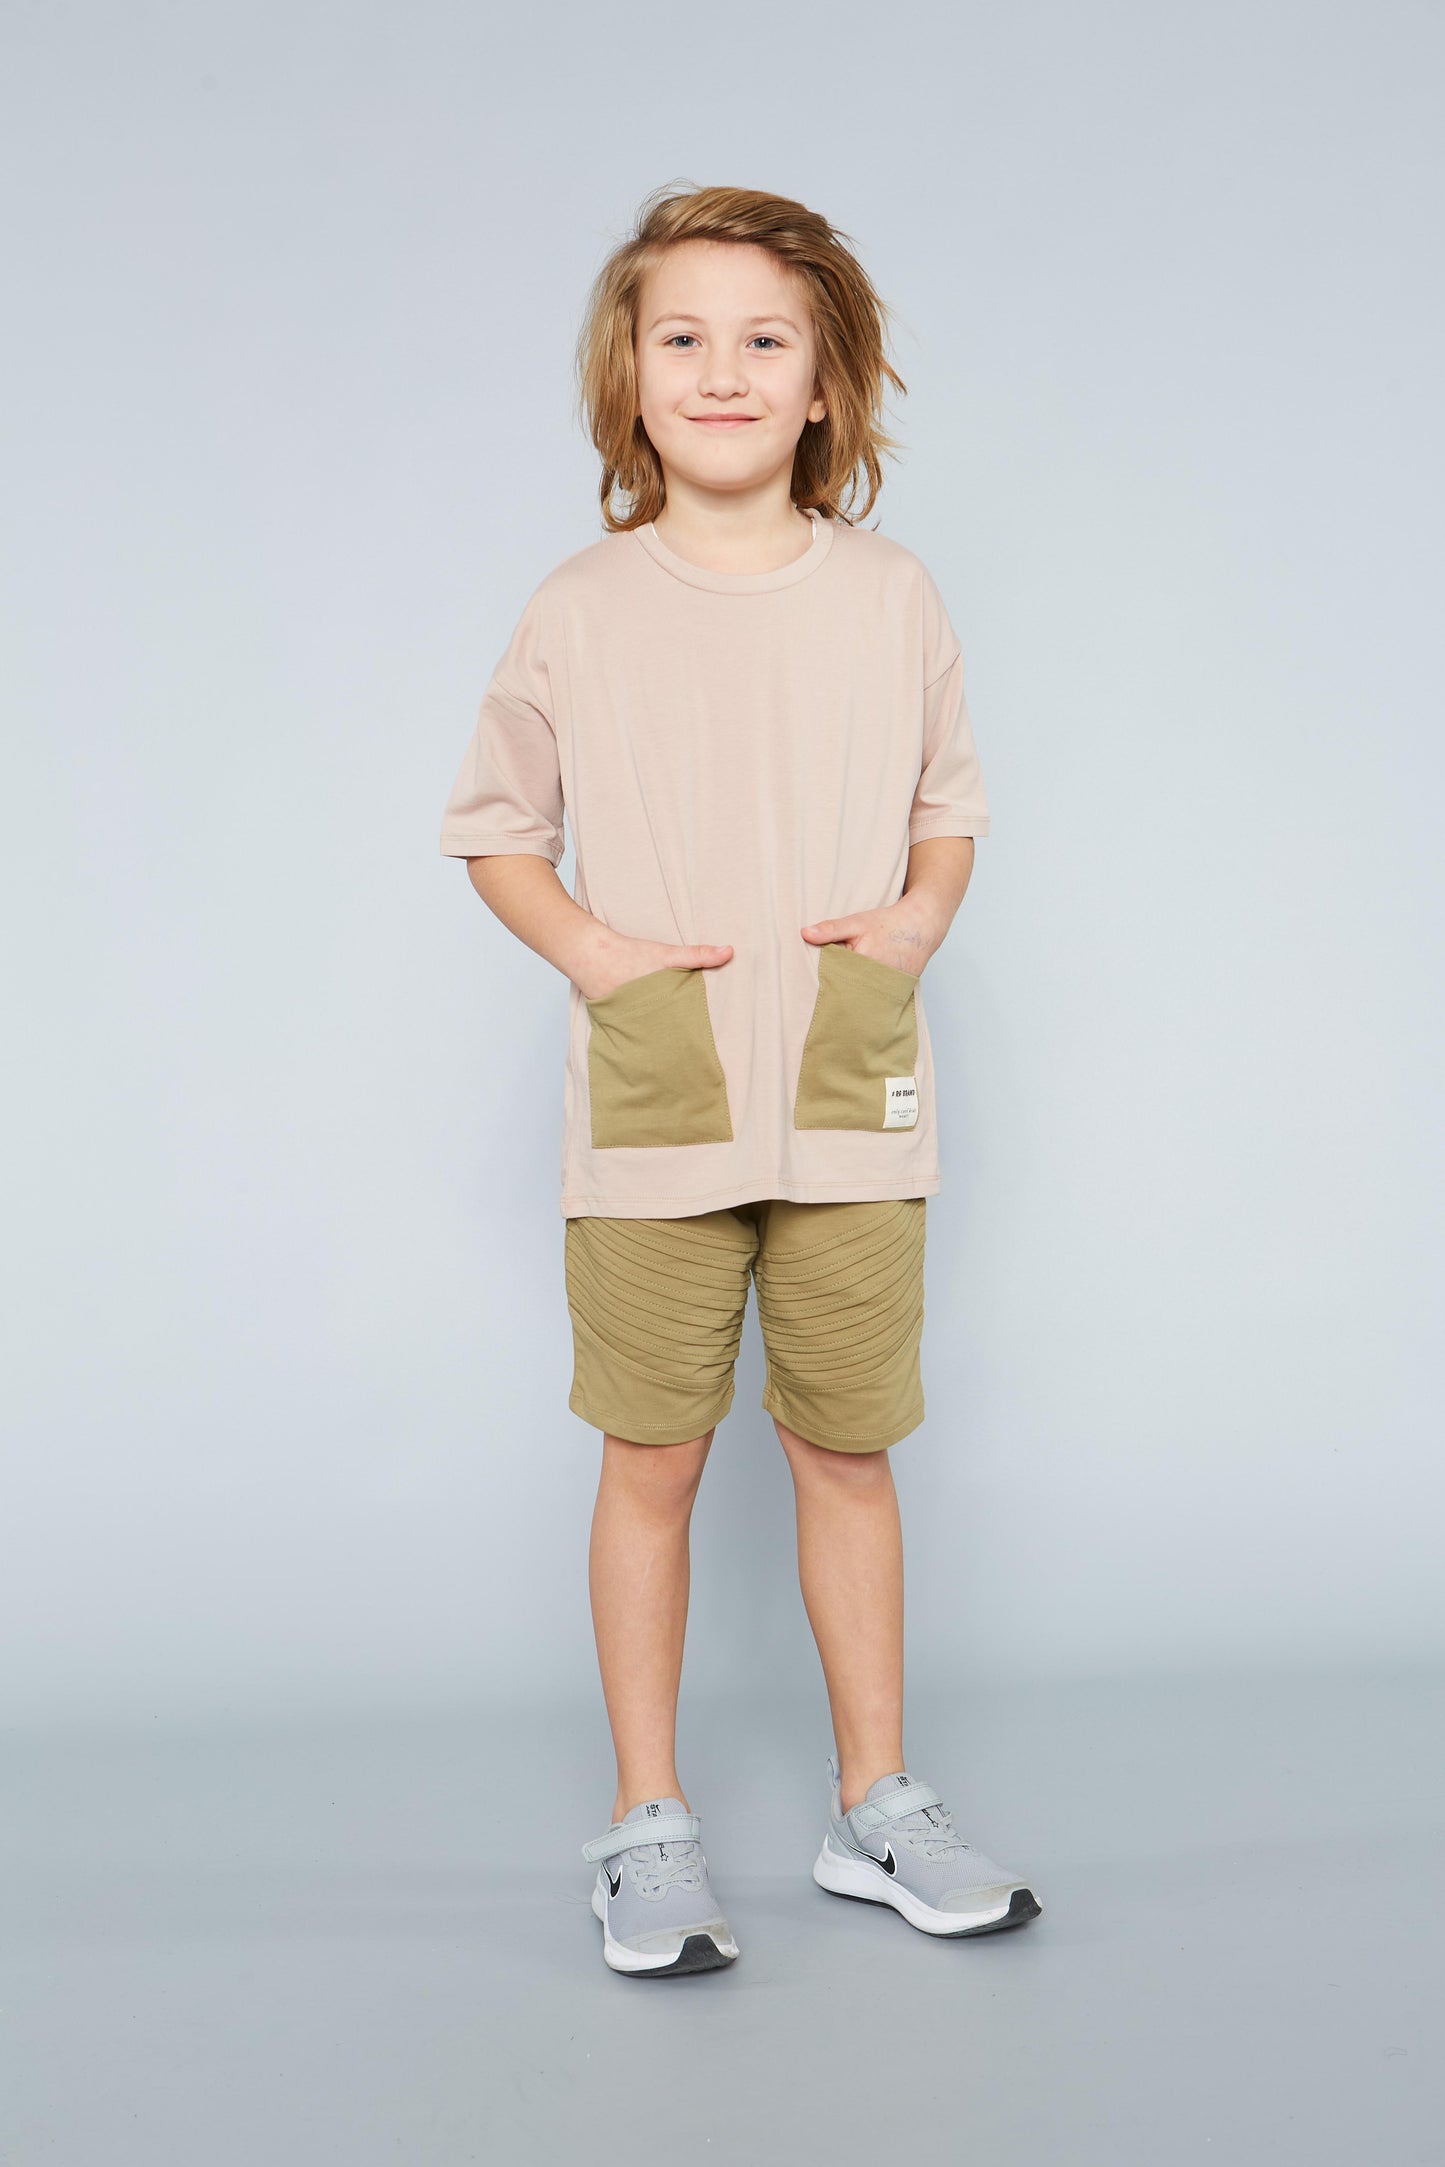 Children's Unisex 100% Cotton Double Pocket T-Shirt